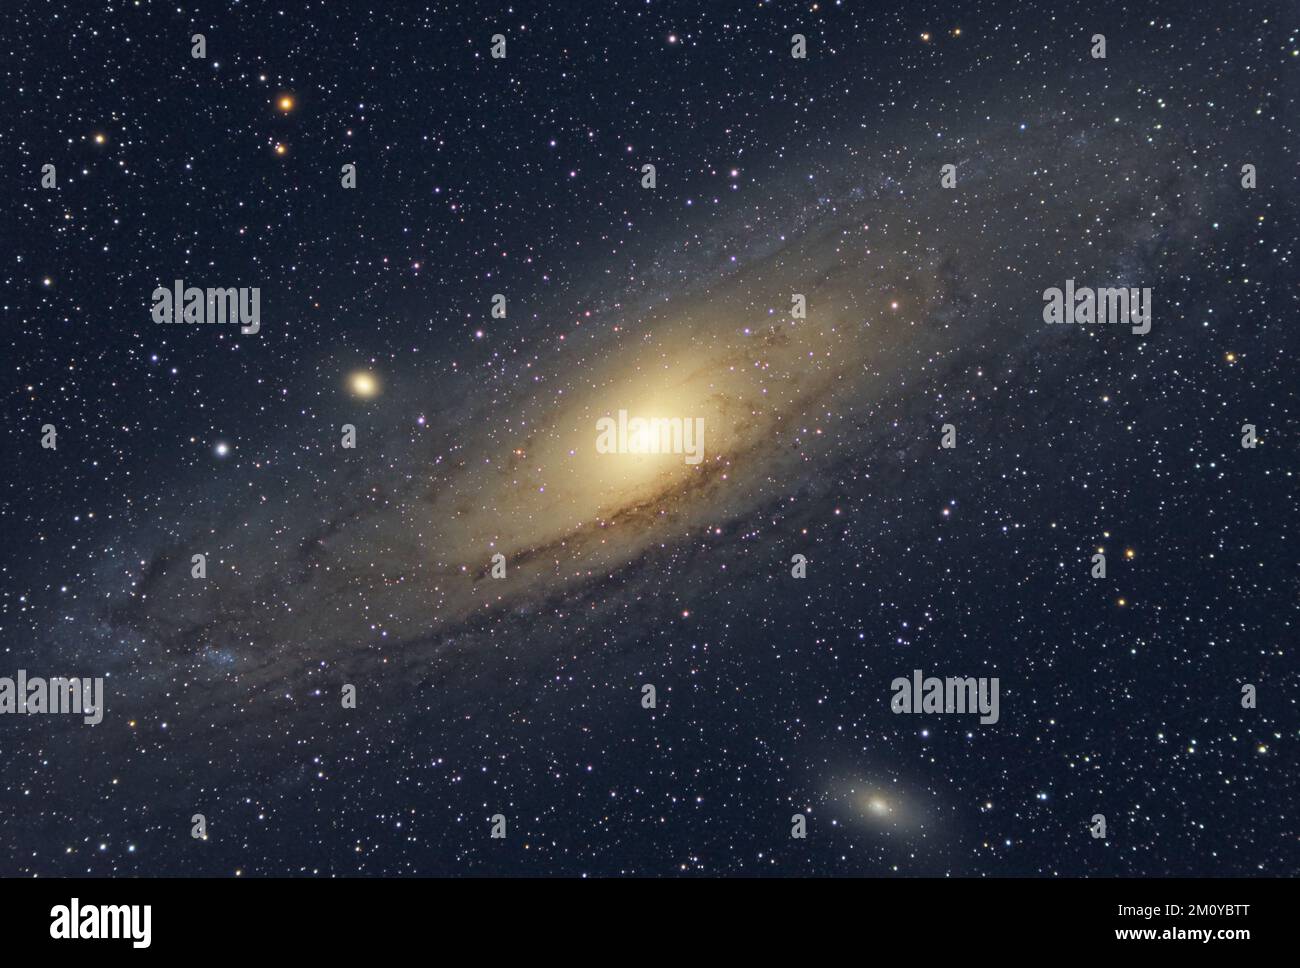 La galaxie Andromeda, également connue sous le nom de Messier 31 et les galaxies satellites M32 et M110. Carte des étoiles du ciel Banque D'Images